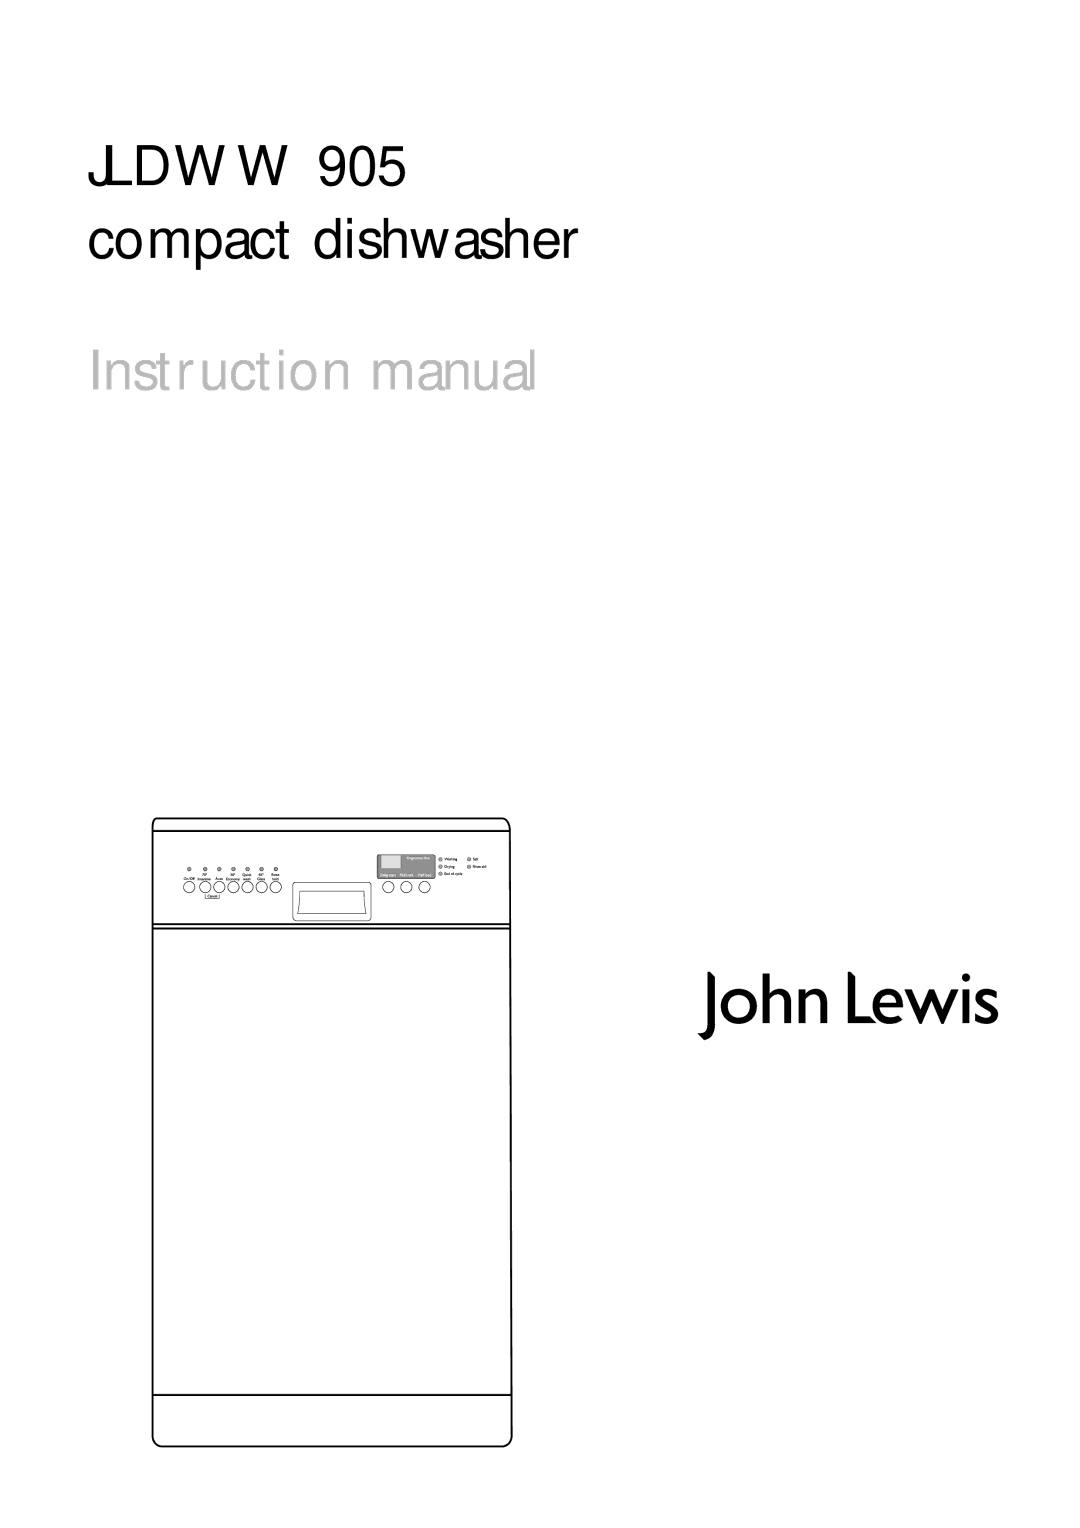 John Lewis JLDWW 905 instruction manual Jldww 905 compact dishwasher 